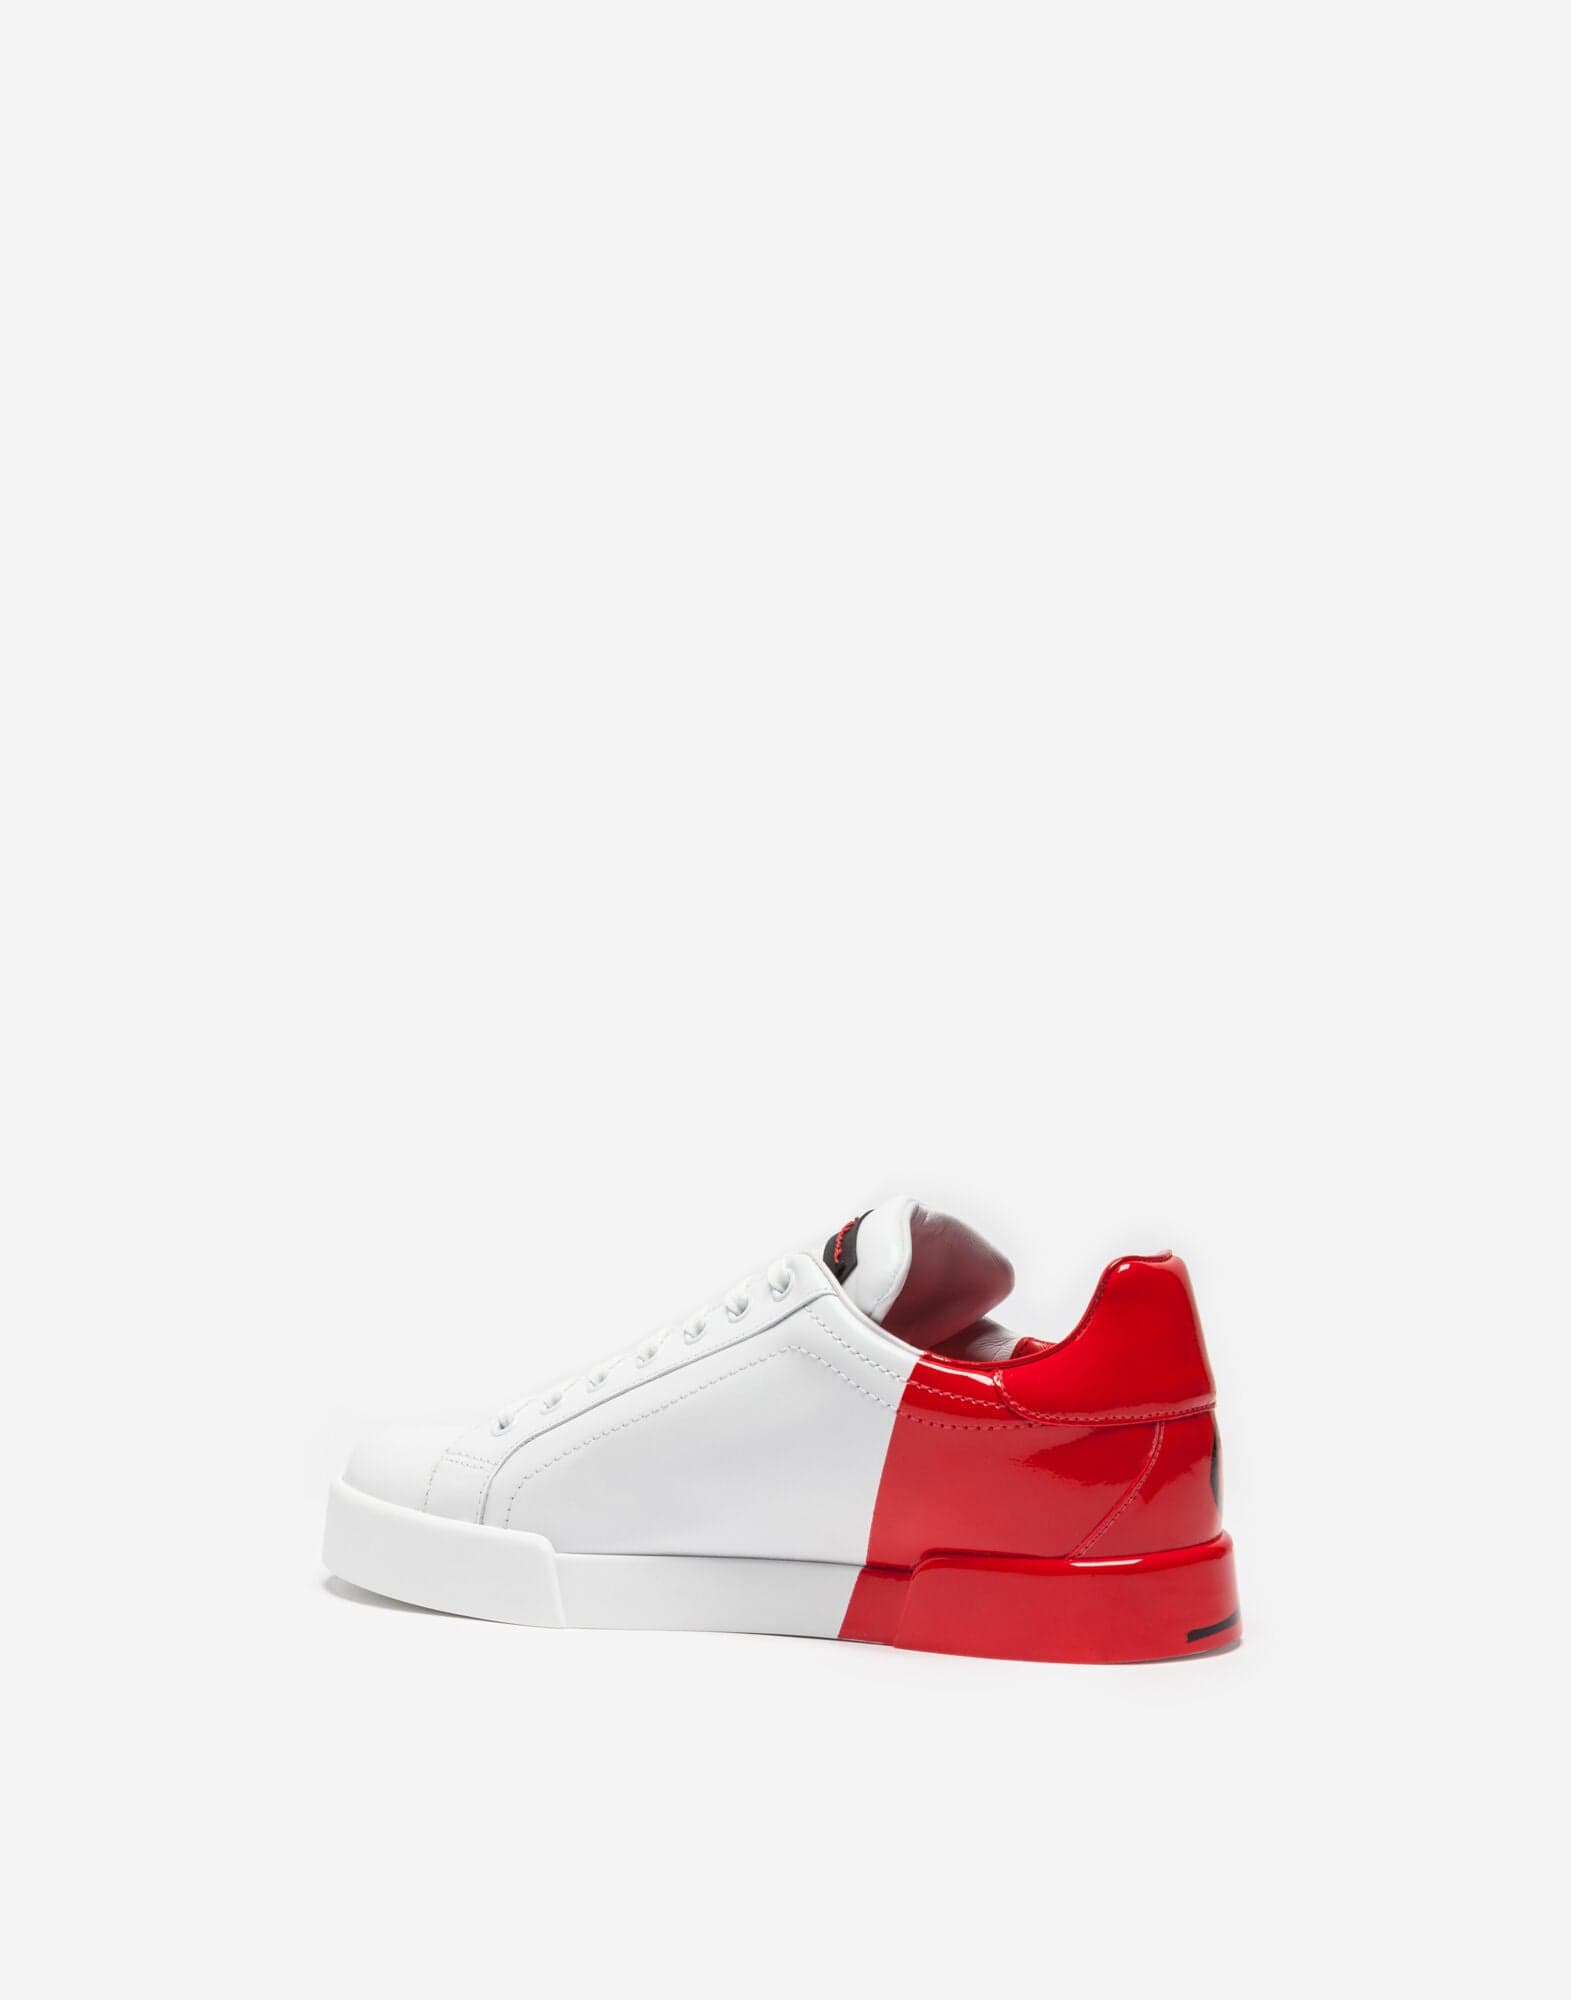 Dolce & Gabbana Red Portofino Sneakers